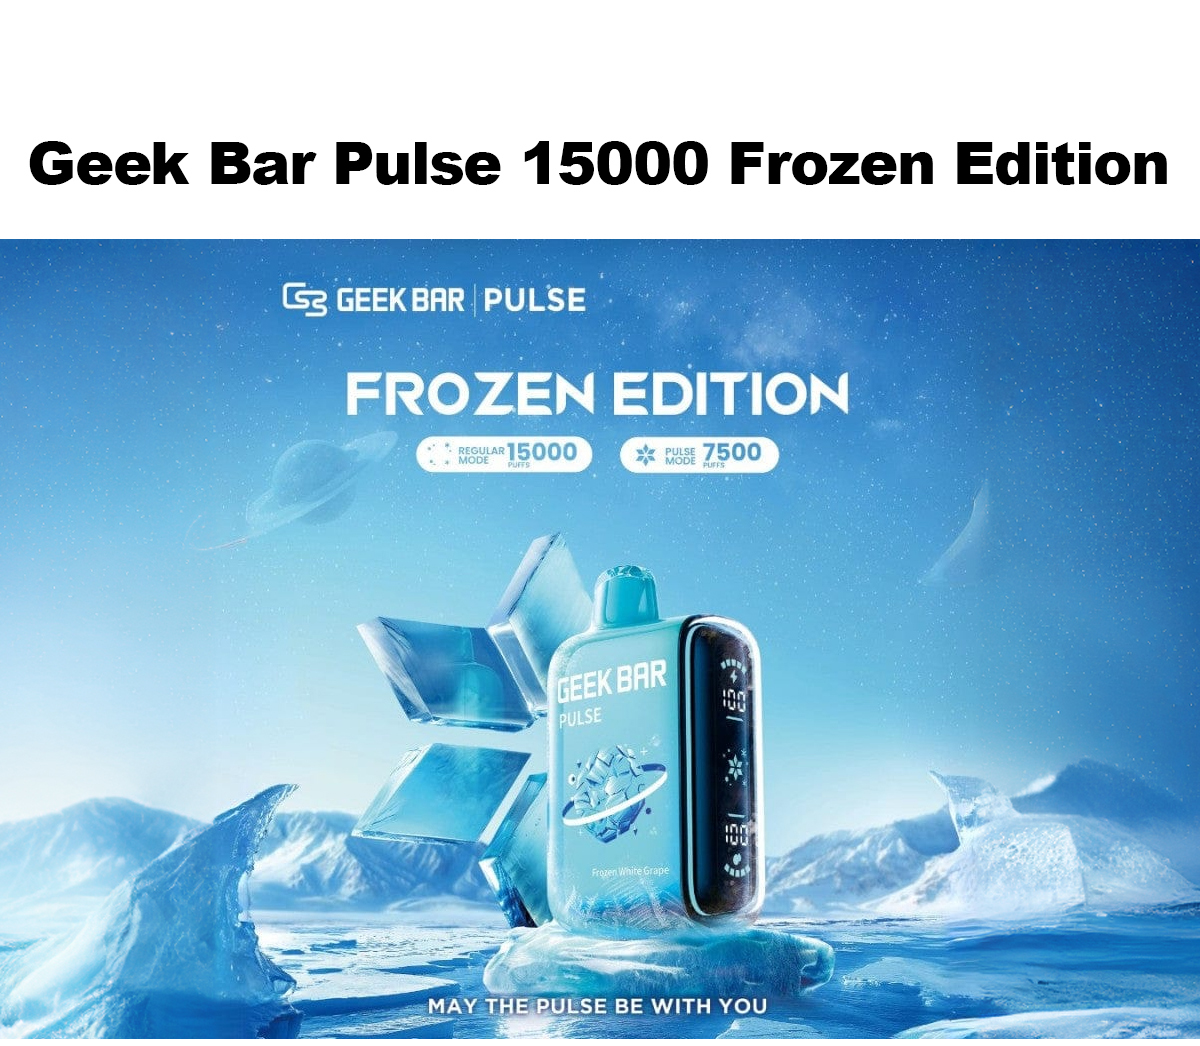 Geek Bar Pulse 15000 Frozen Edition hot sale